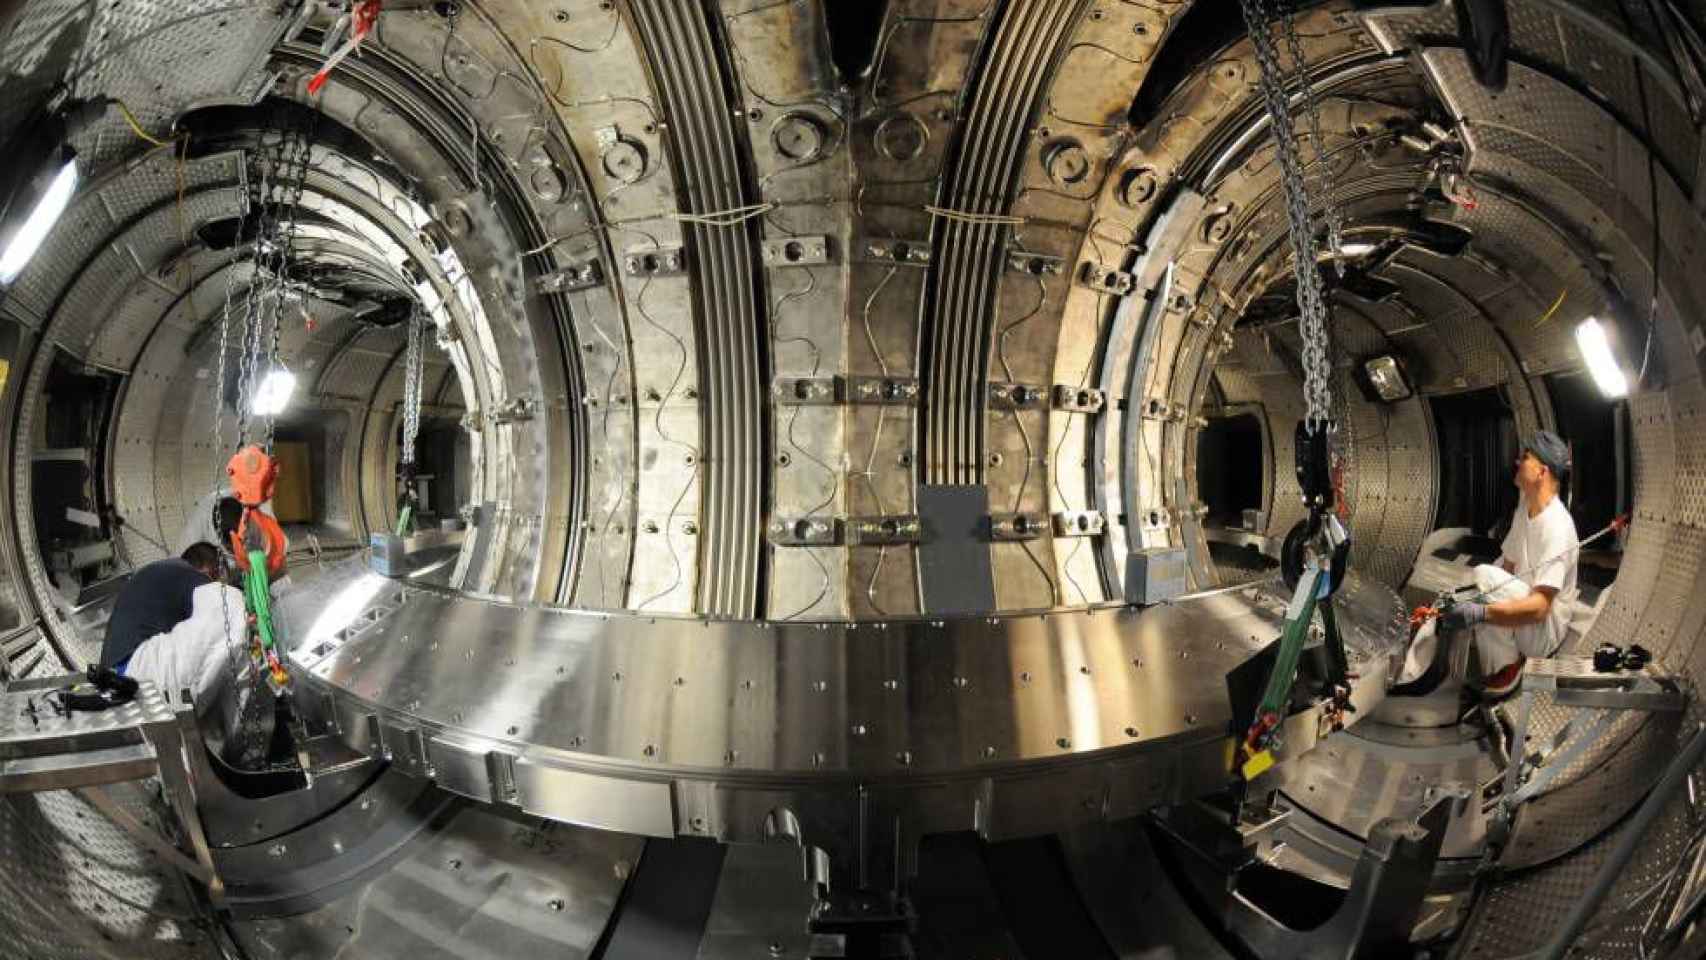 Instalación experimental de plasmas para fusión nuclear en Cadarache, Francia, sede del proyecto ITER.